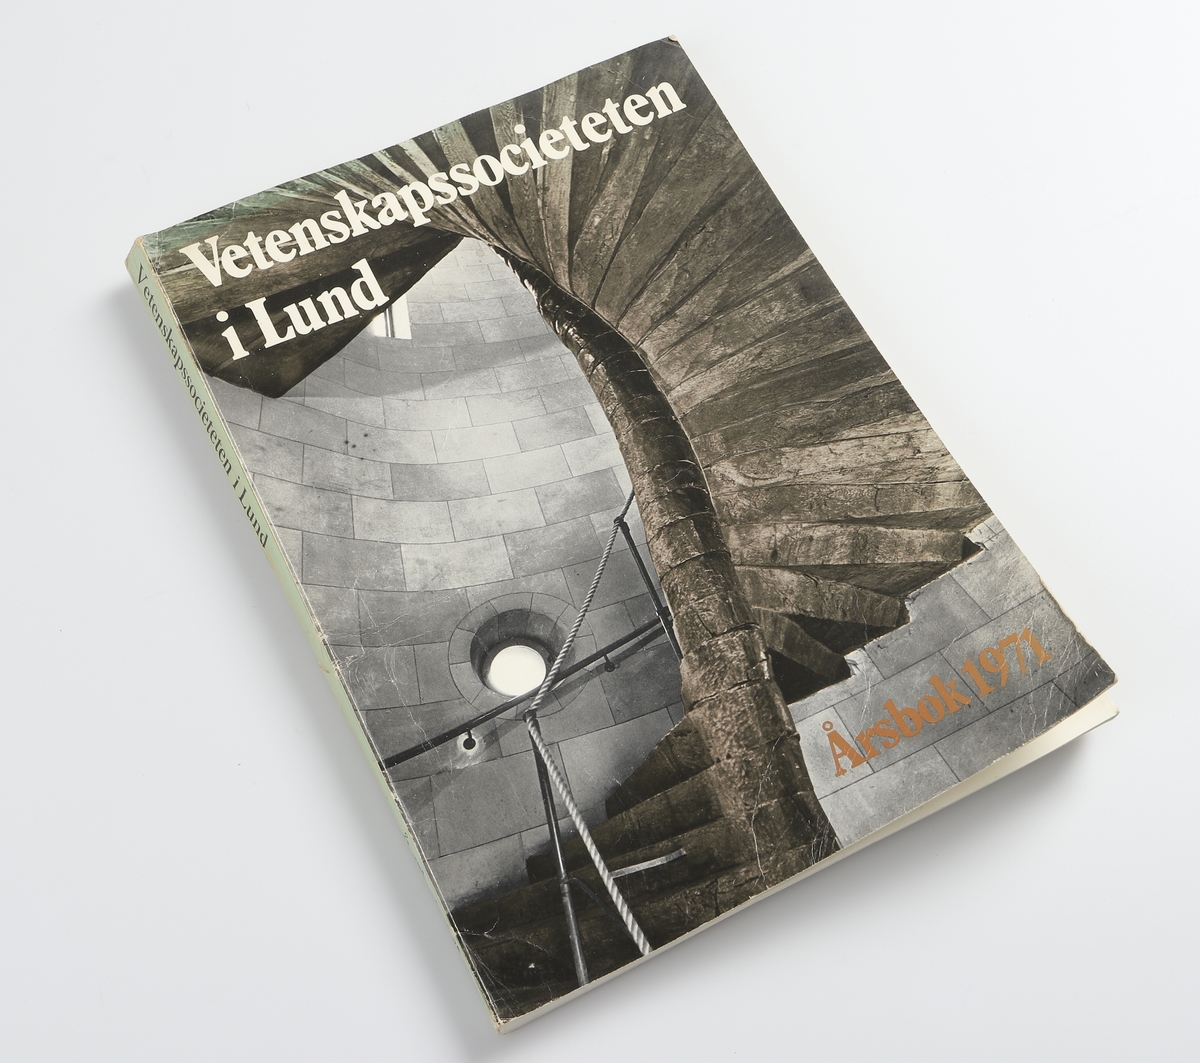 Vetenskapssocieteten i Lund. Årsbok 1971. Gleerups/Lund. Allhems förlag. Berlingska Boktryckeriet, Lund 1971. På försättsbladet en dedikation till Vilhelm Moberg.